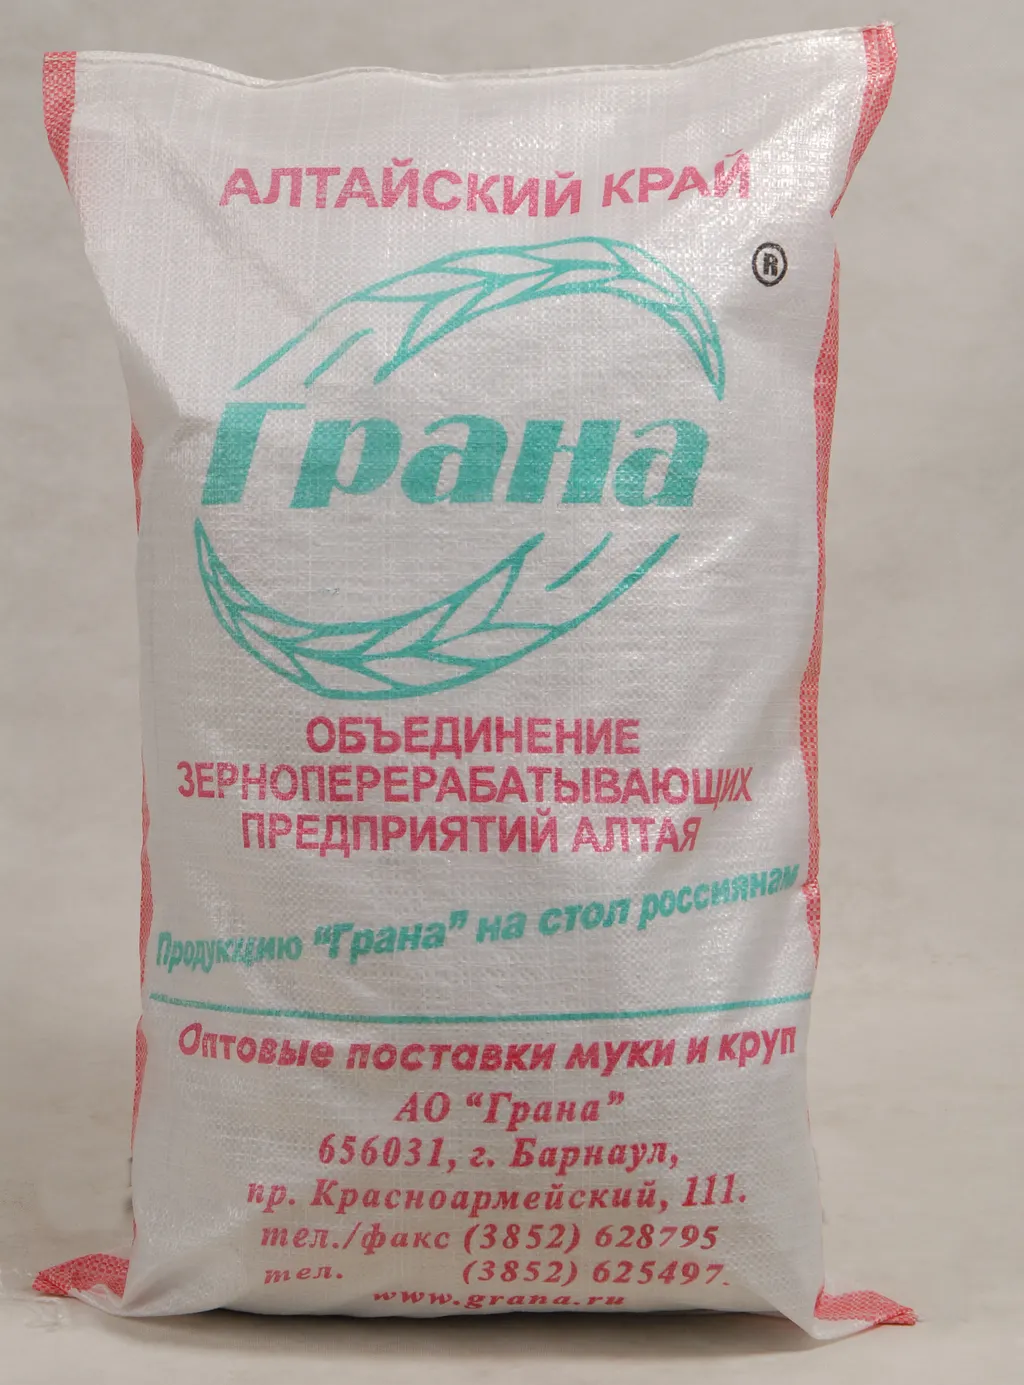 мука высший сорт ГОСТ (25 кг) в Барнауле и Алтайском крае